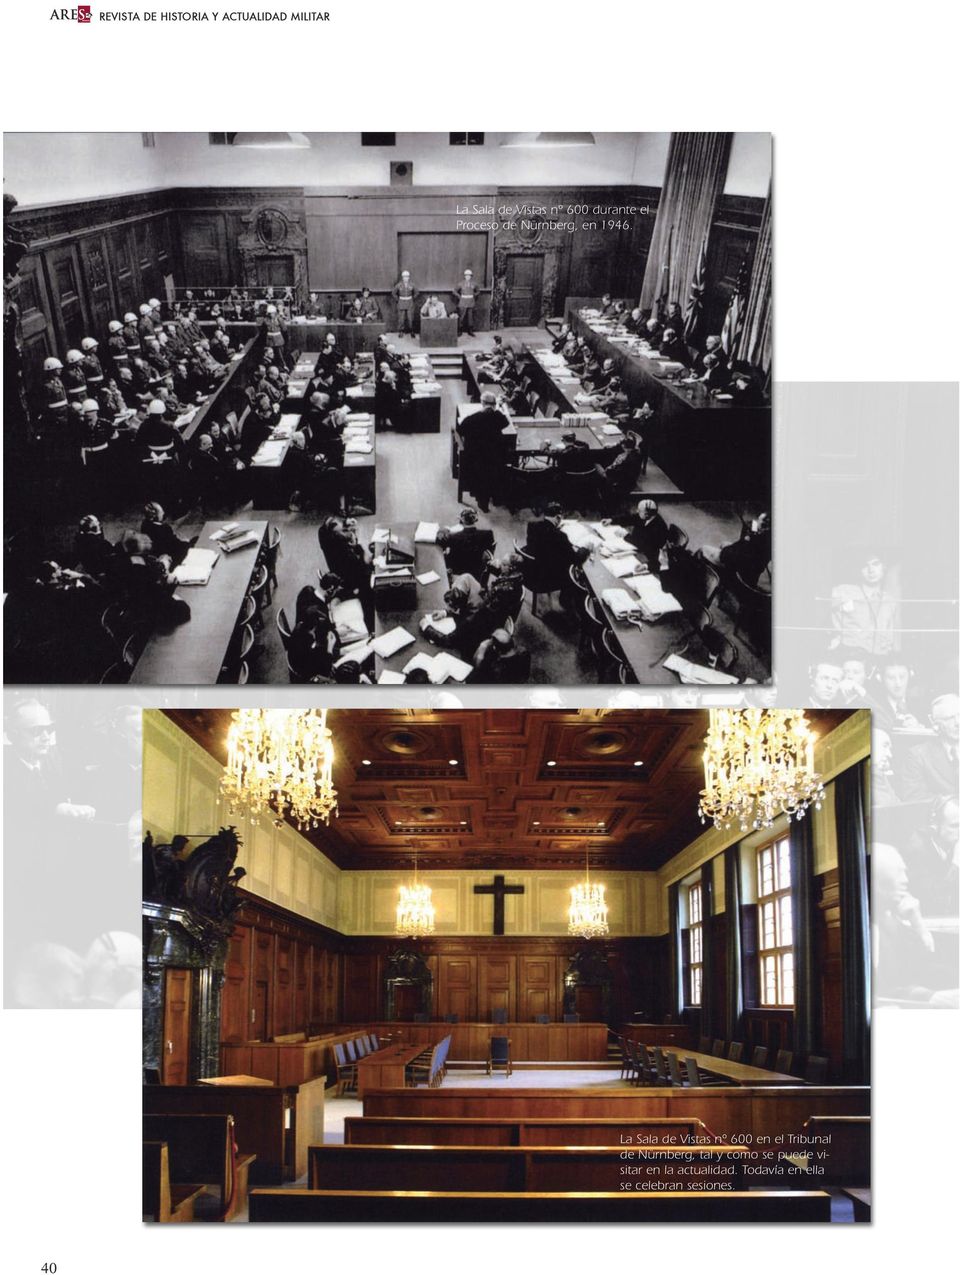 La Sala de Vistas nº 600 en el Tribunal de Nürnberg, tal y